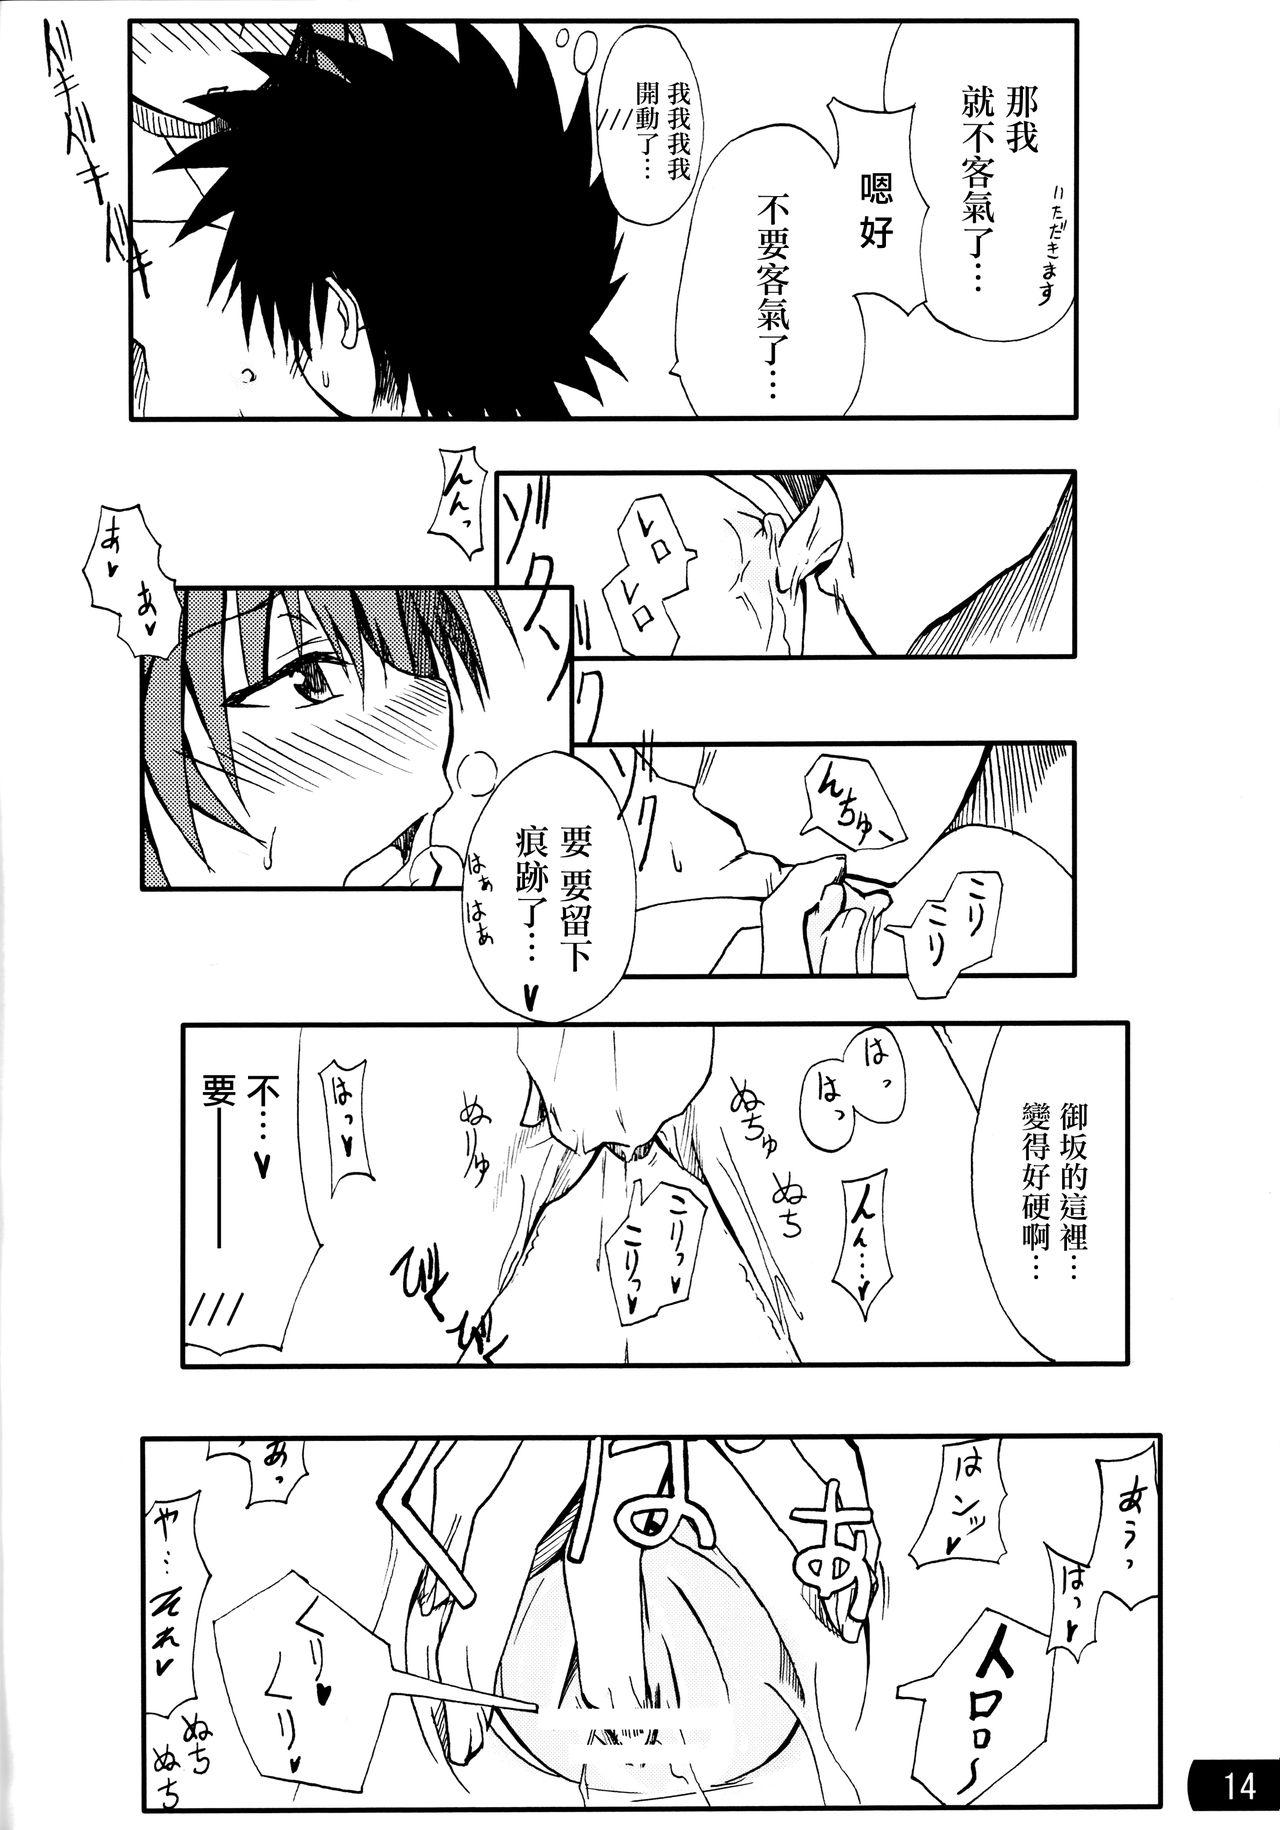 Family Toaru mousou no chou denji hon 02 - Toaru kagaku no railgun Amateur - Page 13